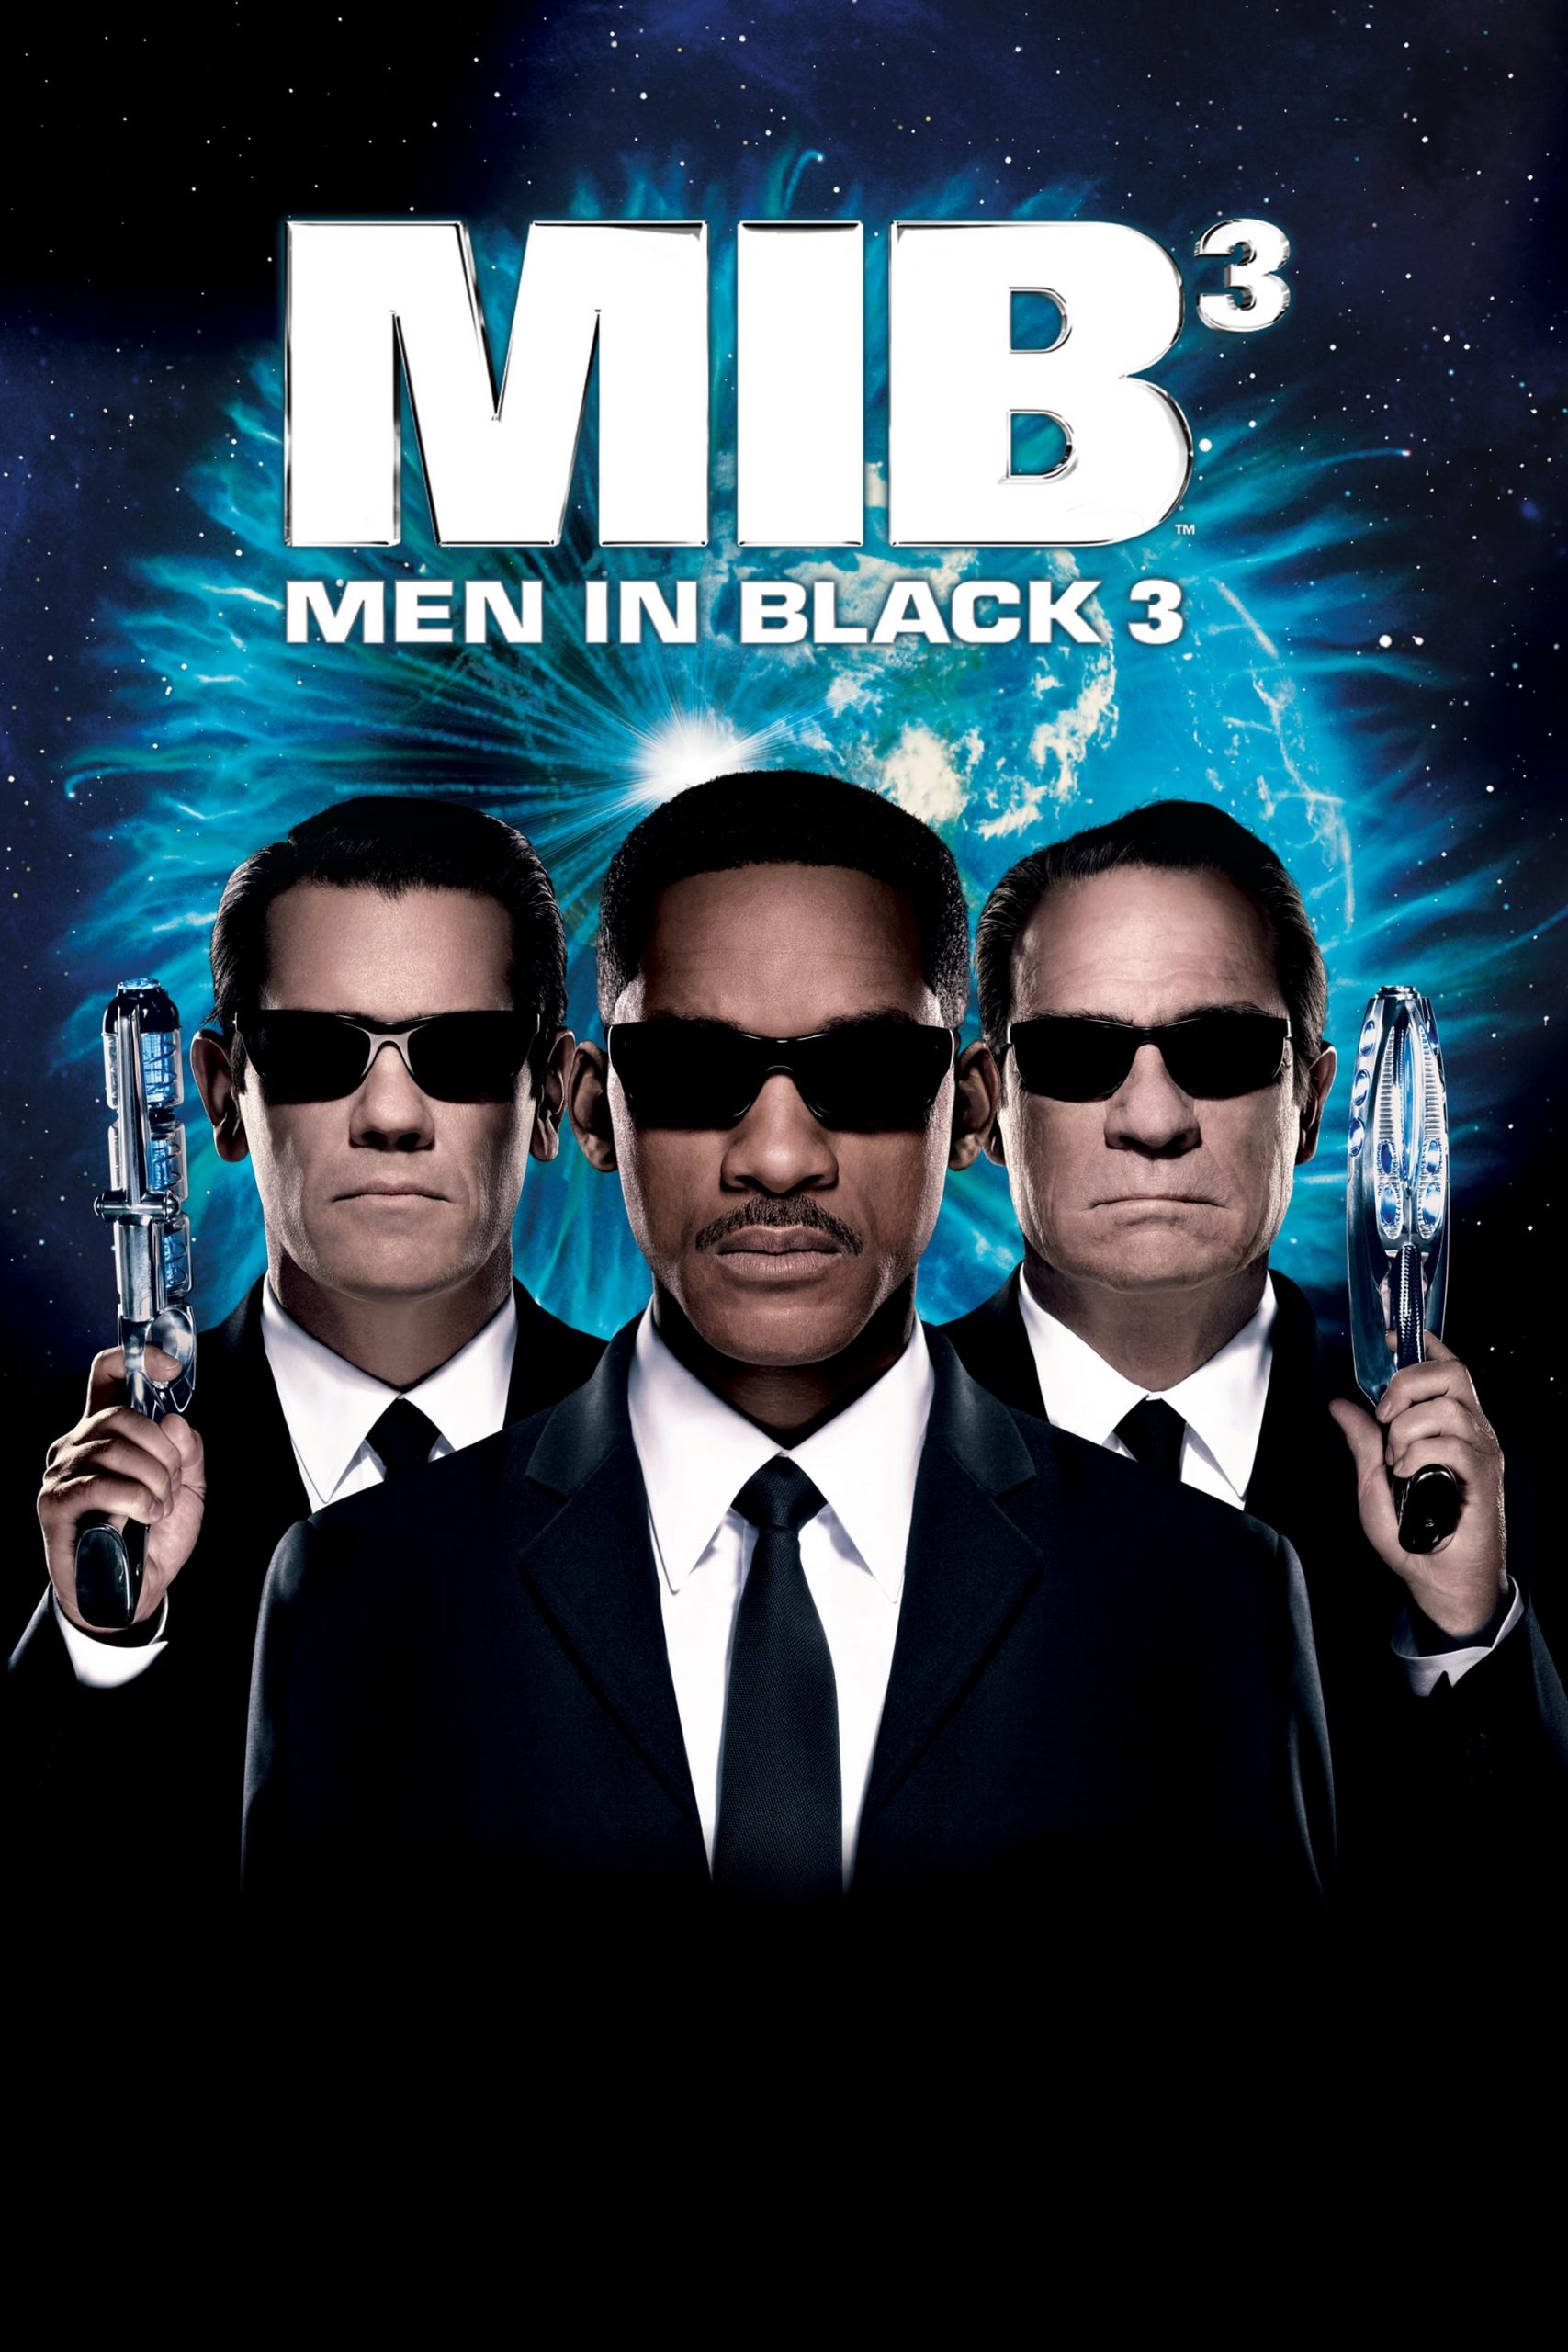 Men in Black 3 [HD] (2012)